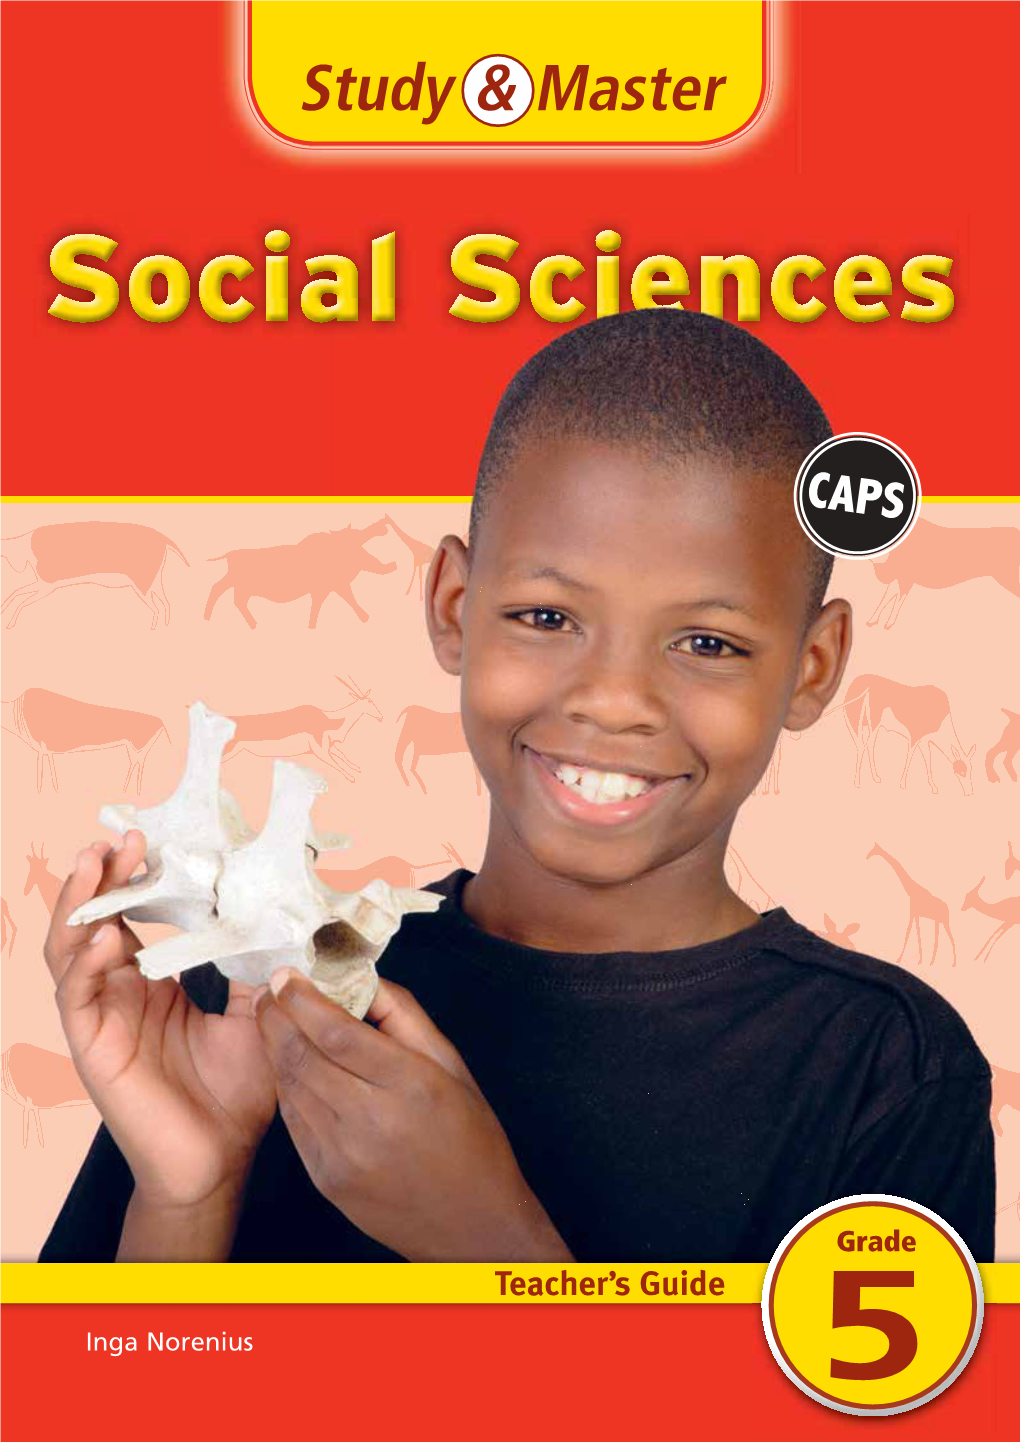 Study & Master Social Sciences Grade 5 Teacher's Guide